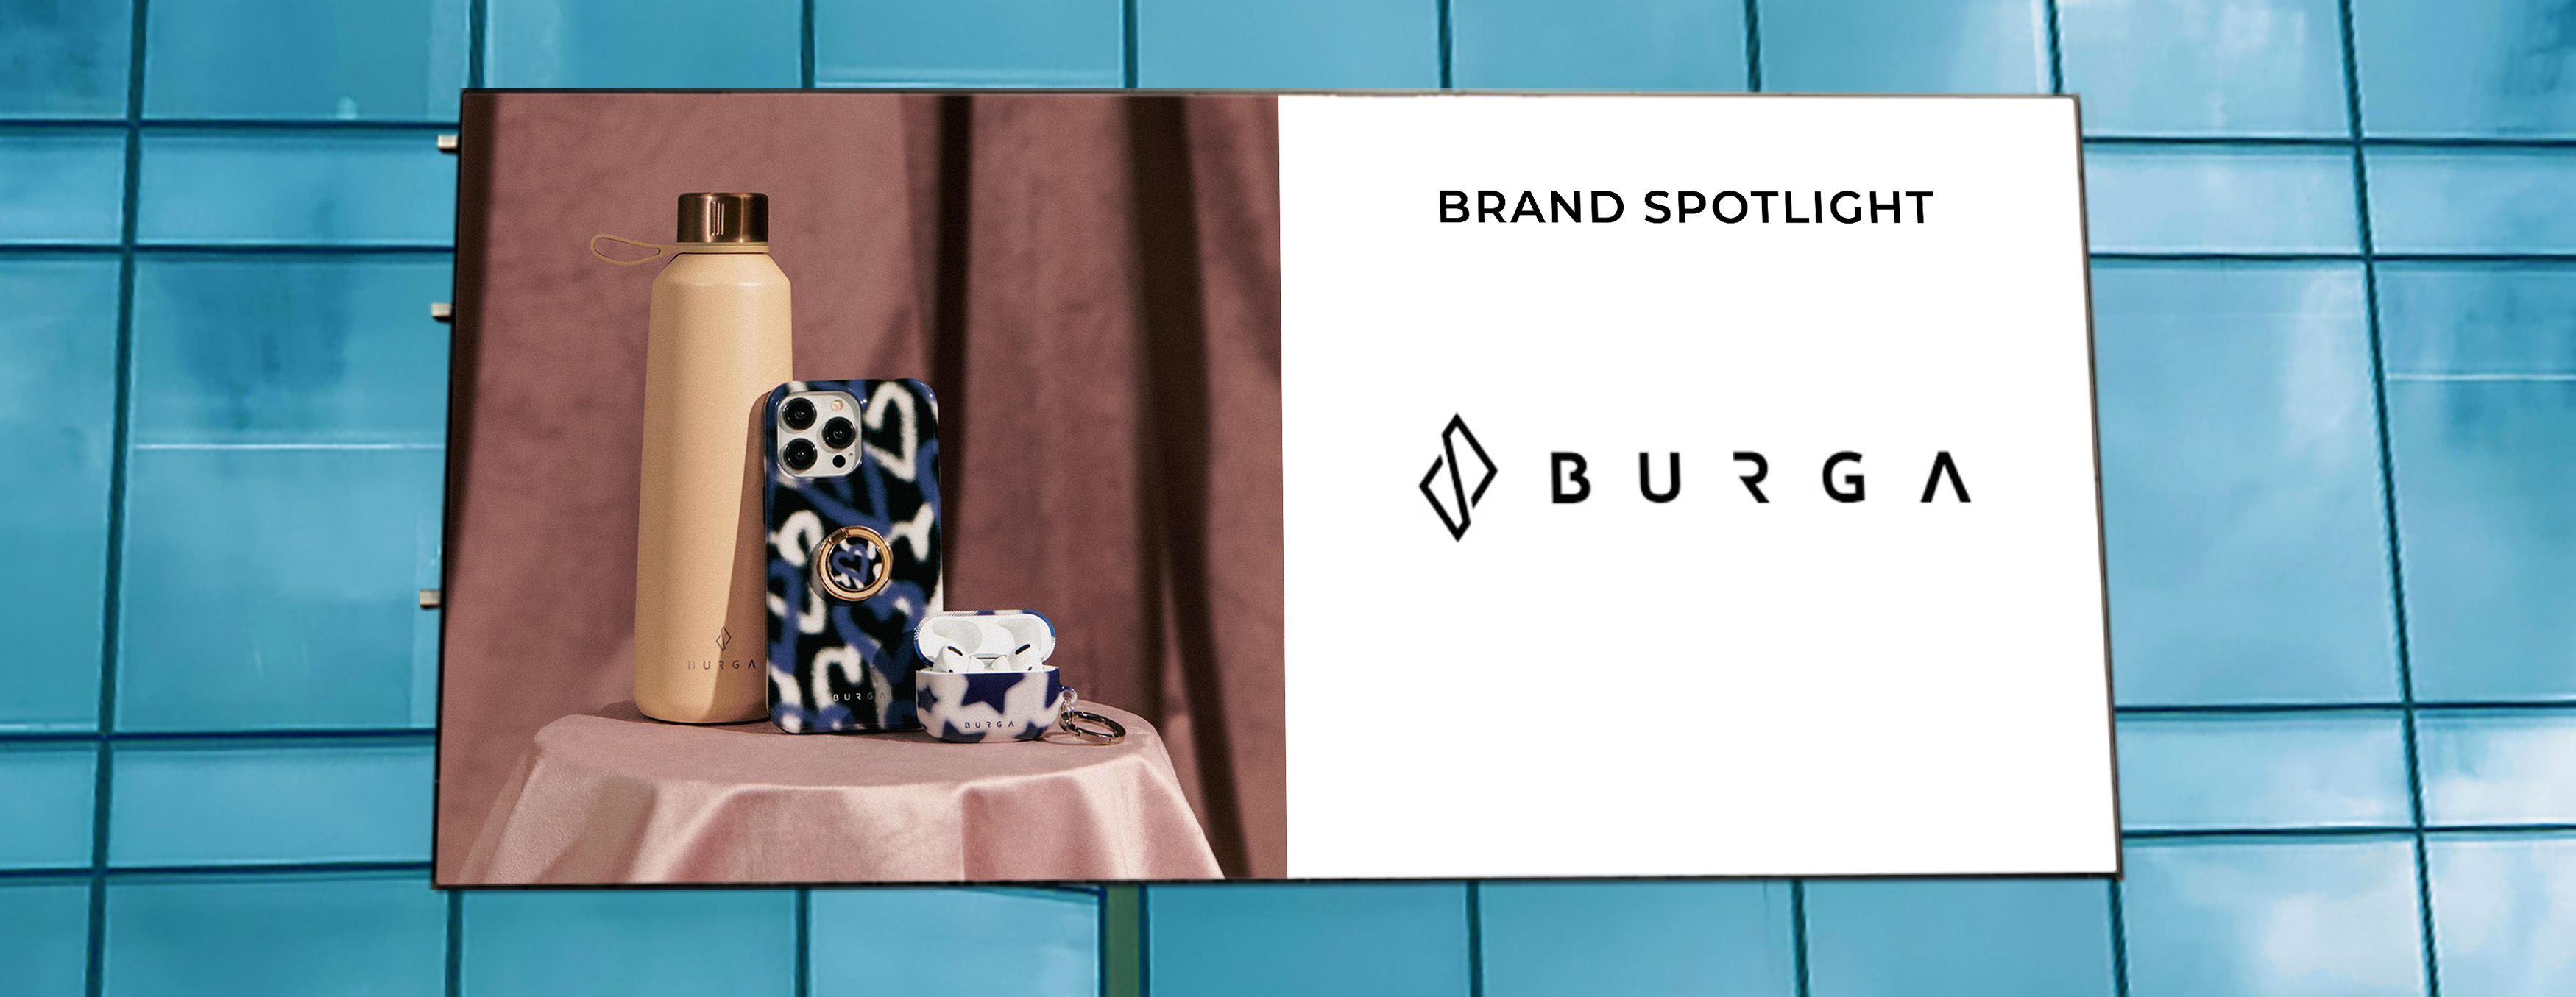 BURGA brand spotlight blog banner